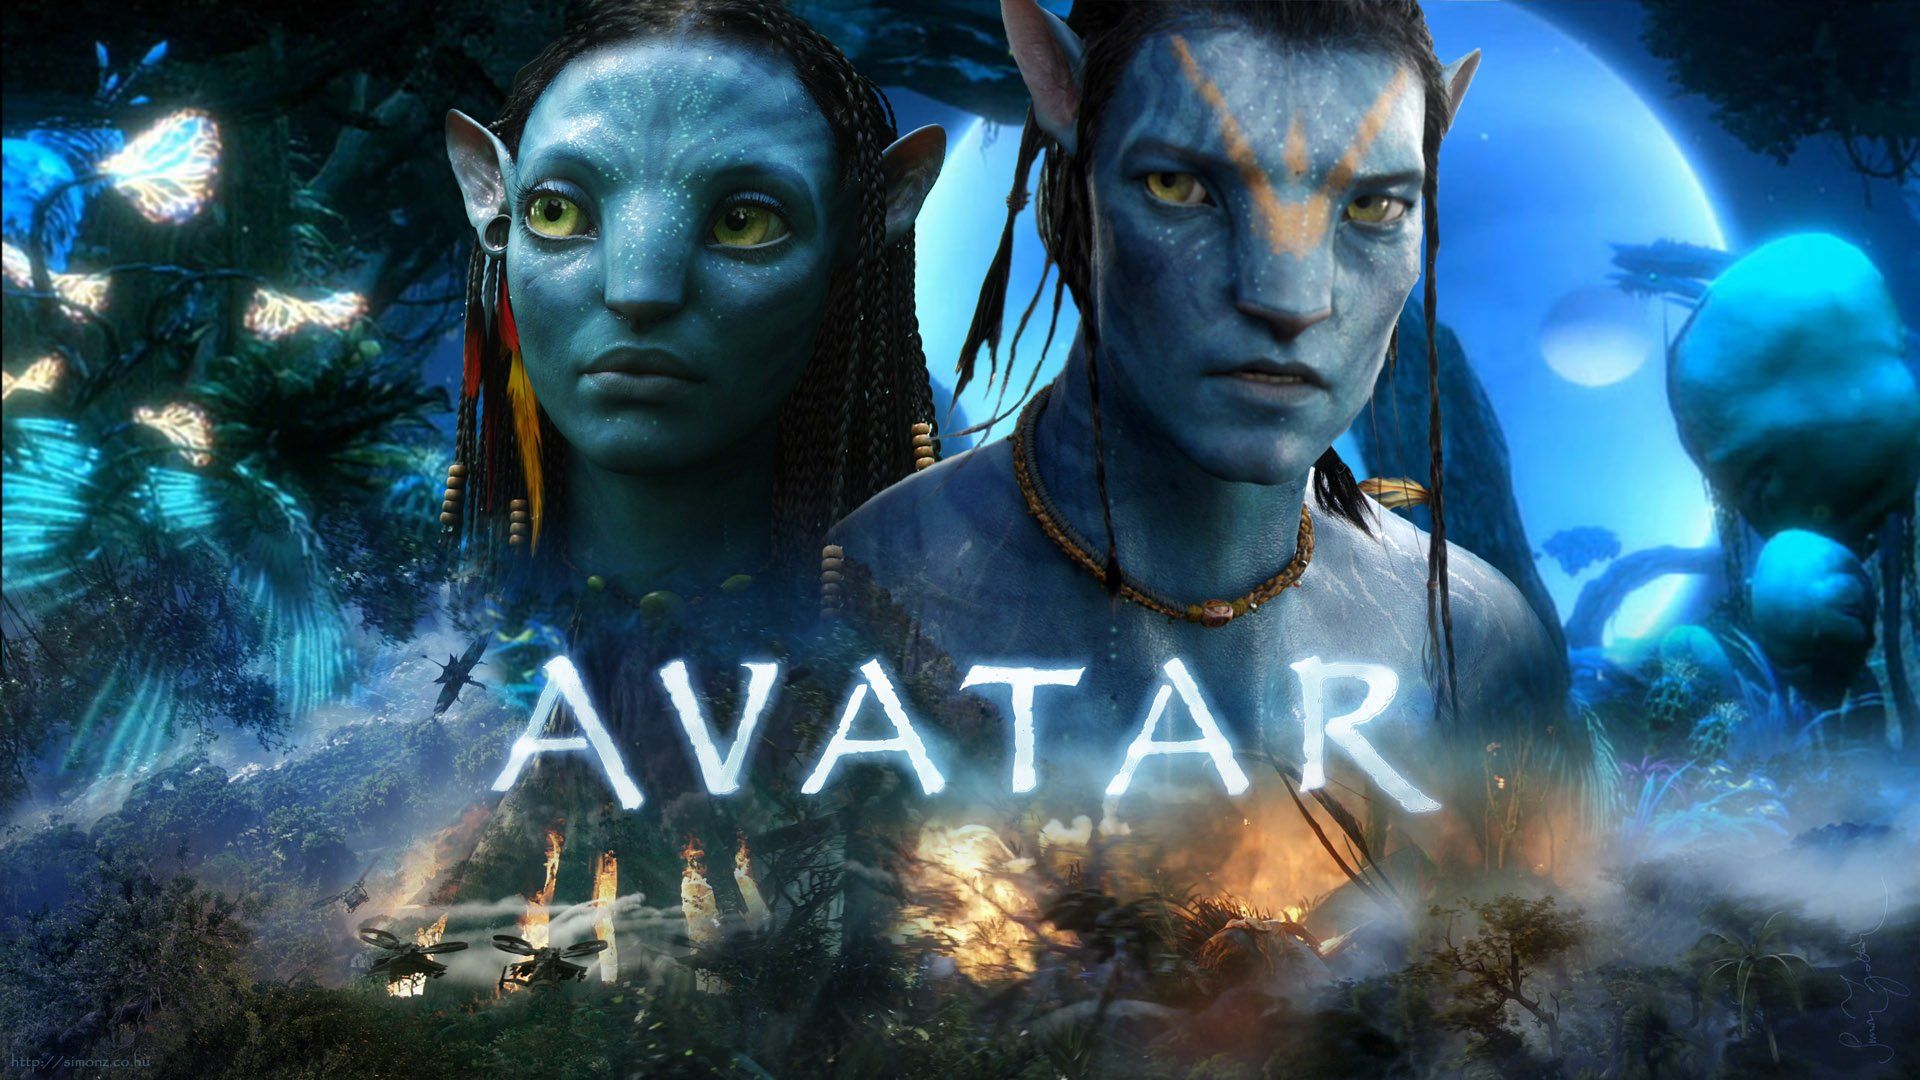 AVATAR  Film posters minimalist Movie posters minimalist Avatar movie